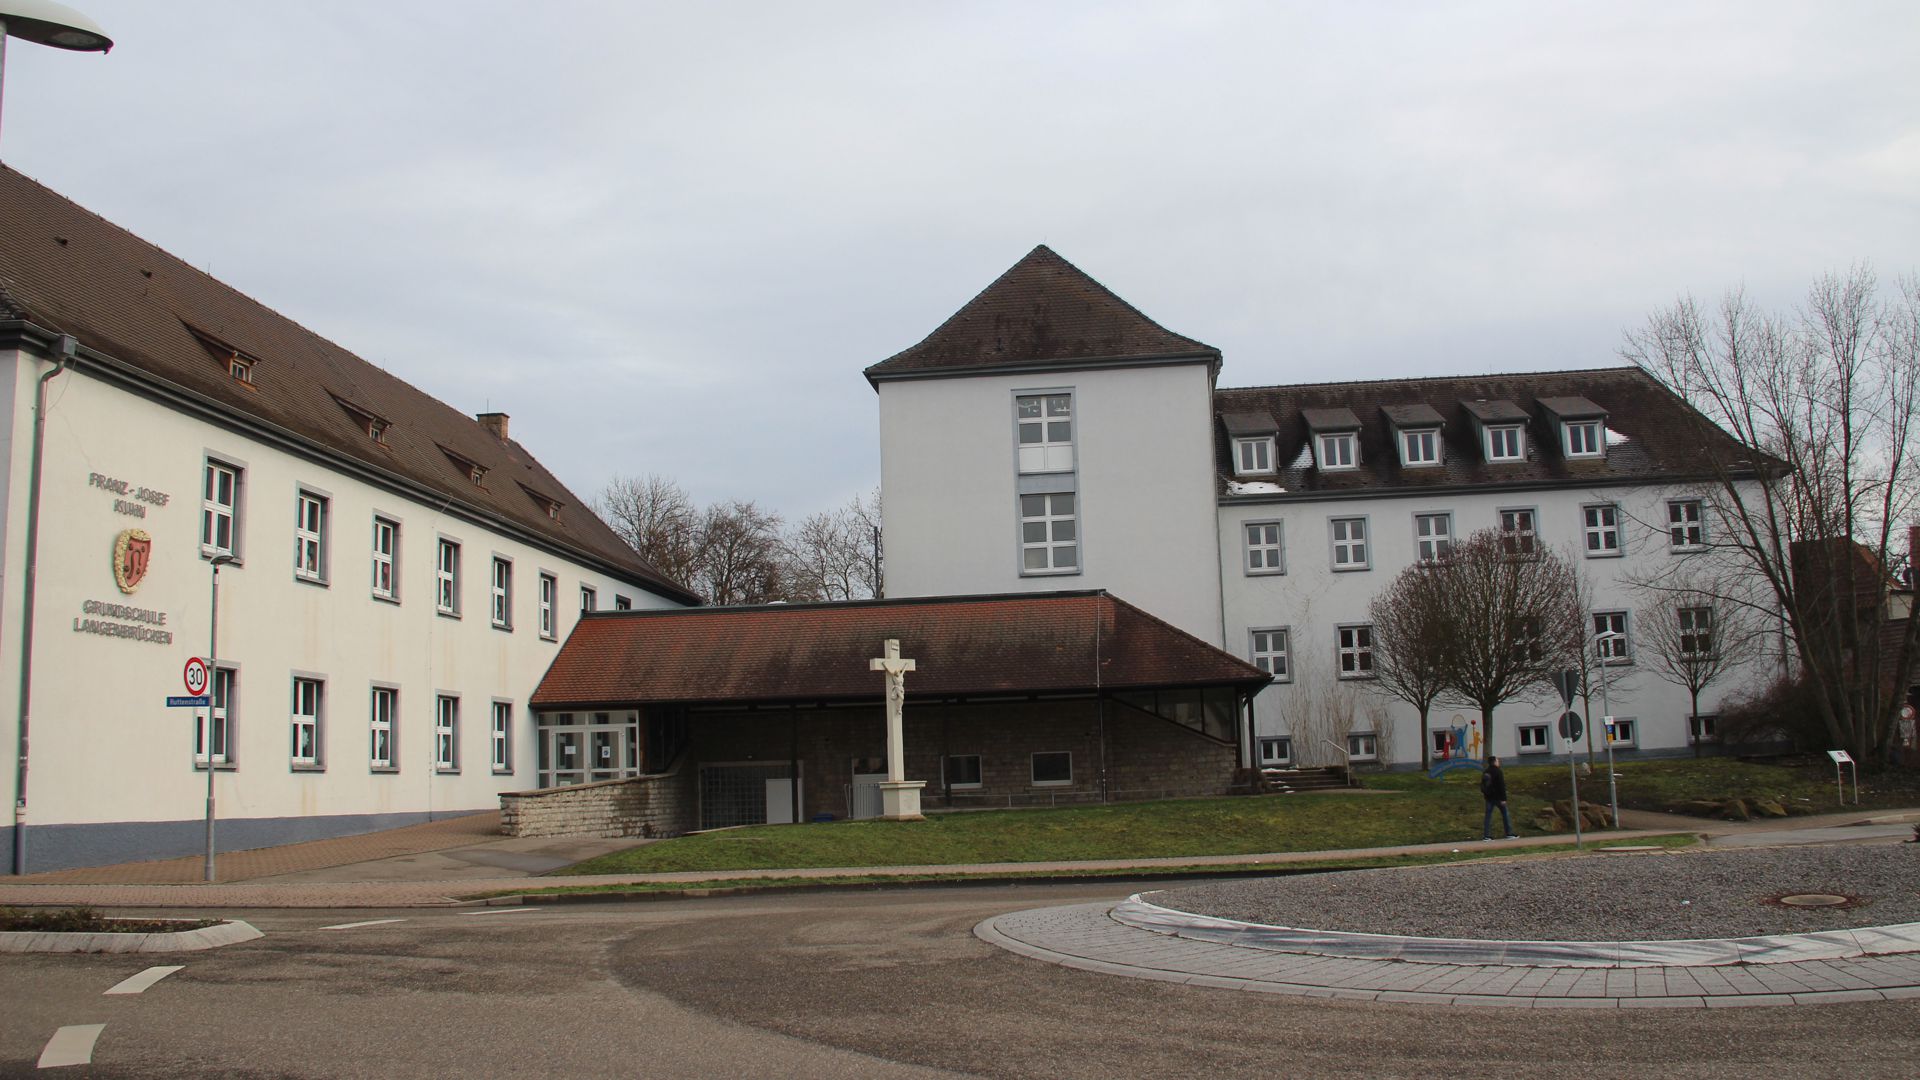 Die Franz-Josef-Kuhn-Grundschule Langenbrücken kurz vor Wiederöffnung nach dem Lockdown